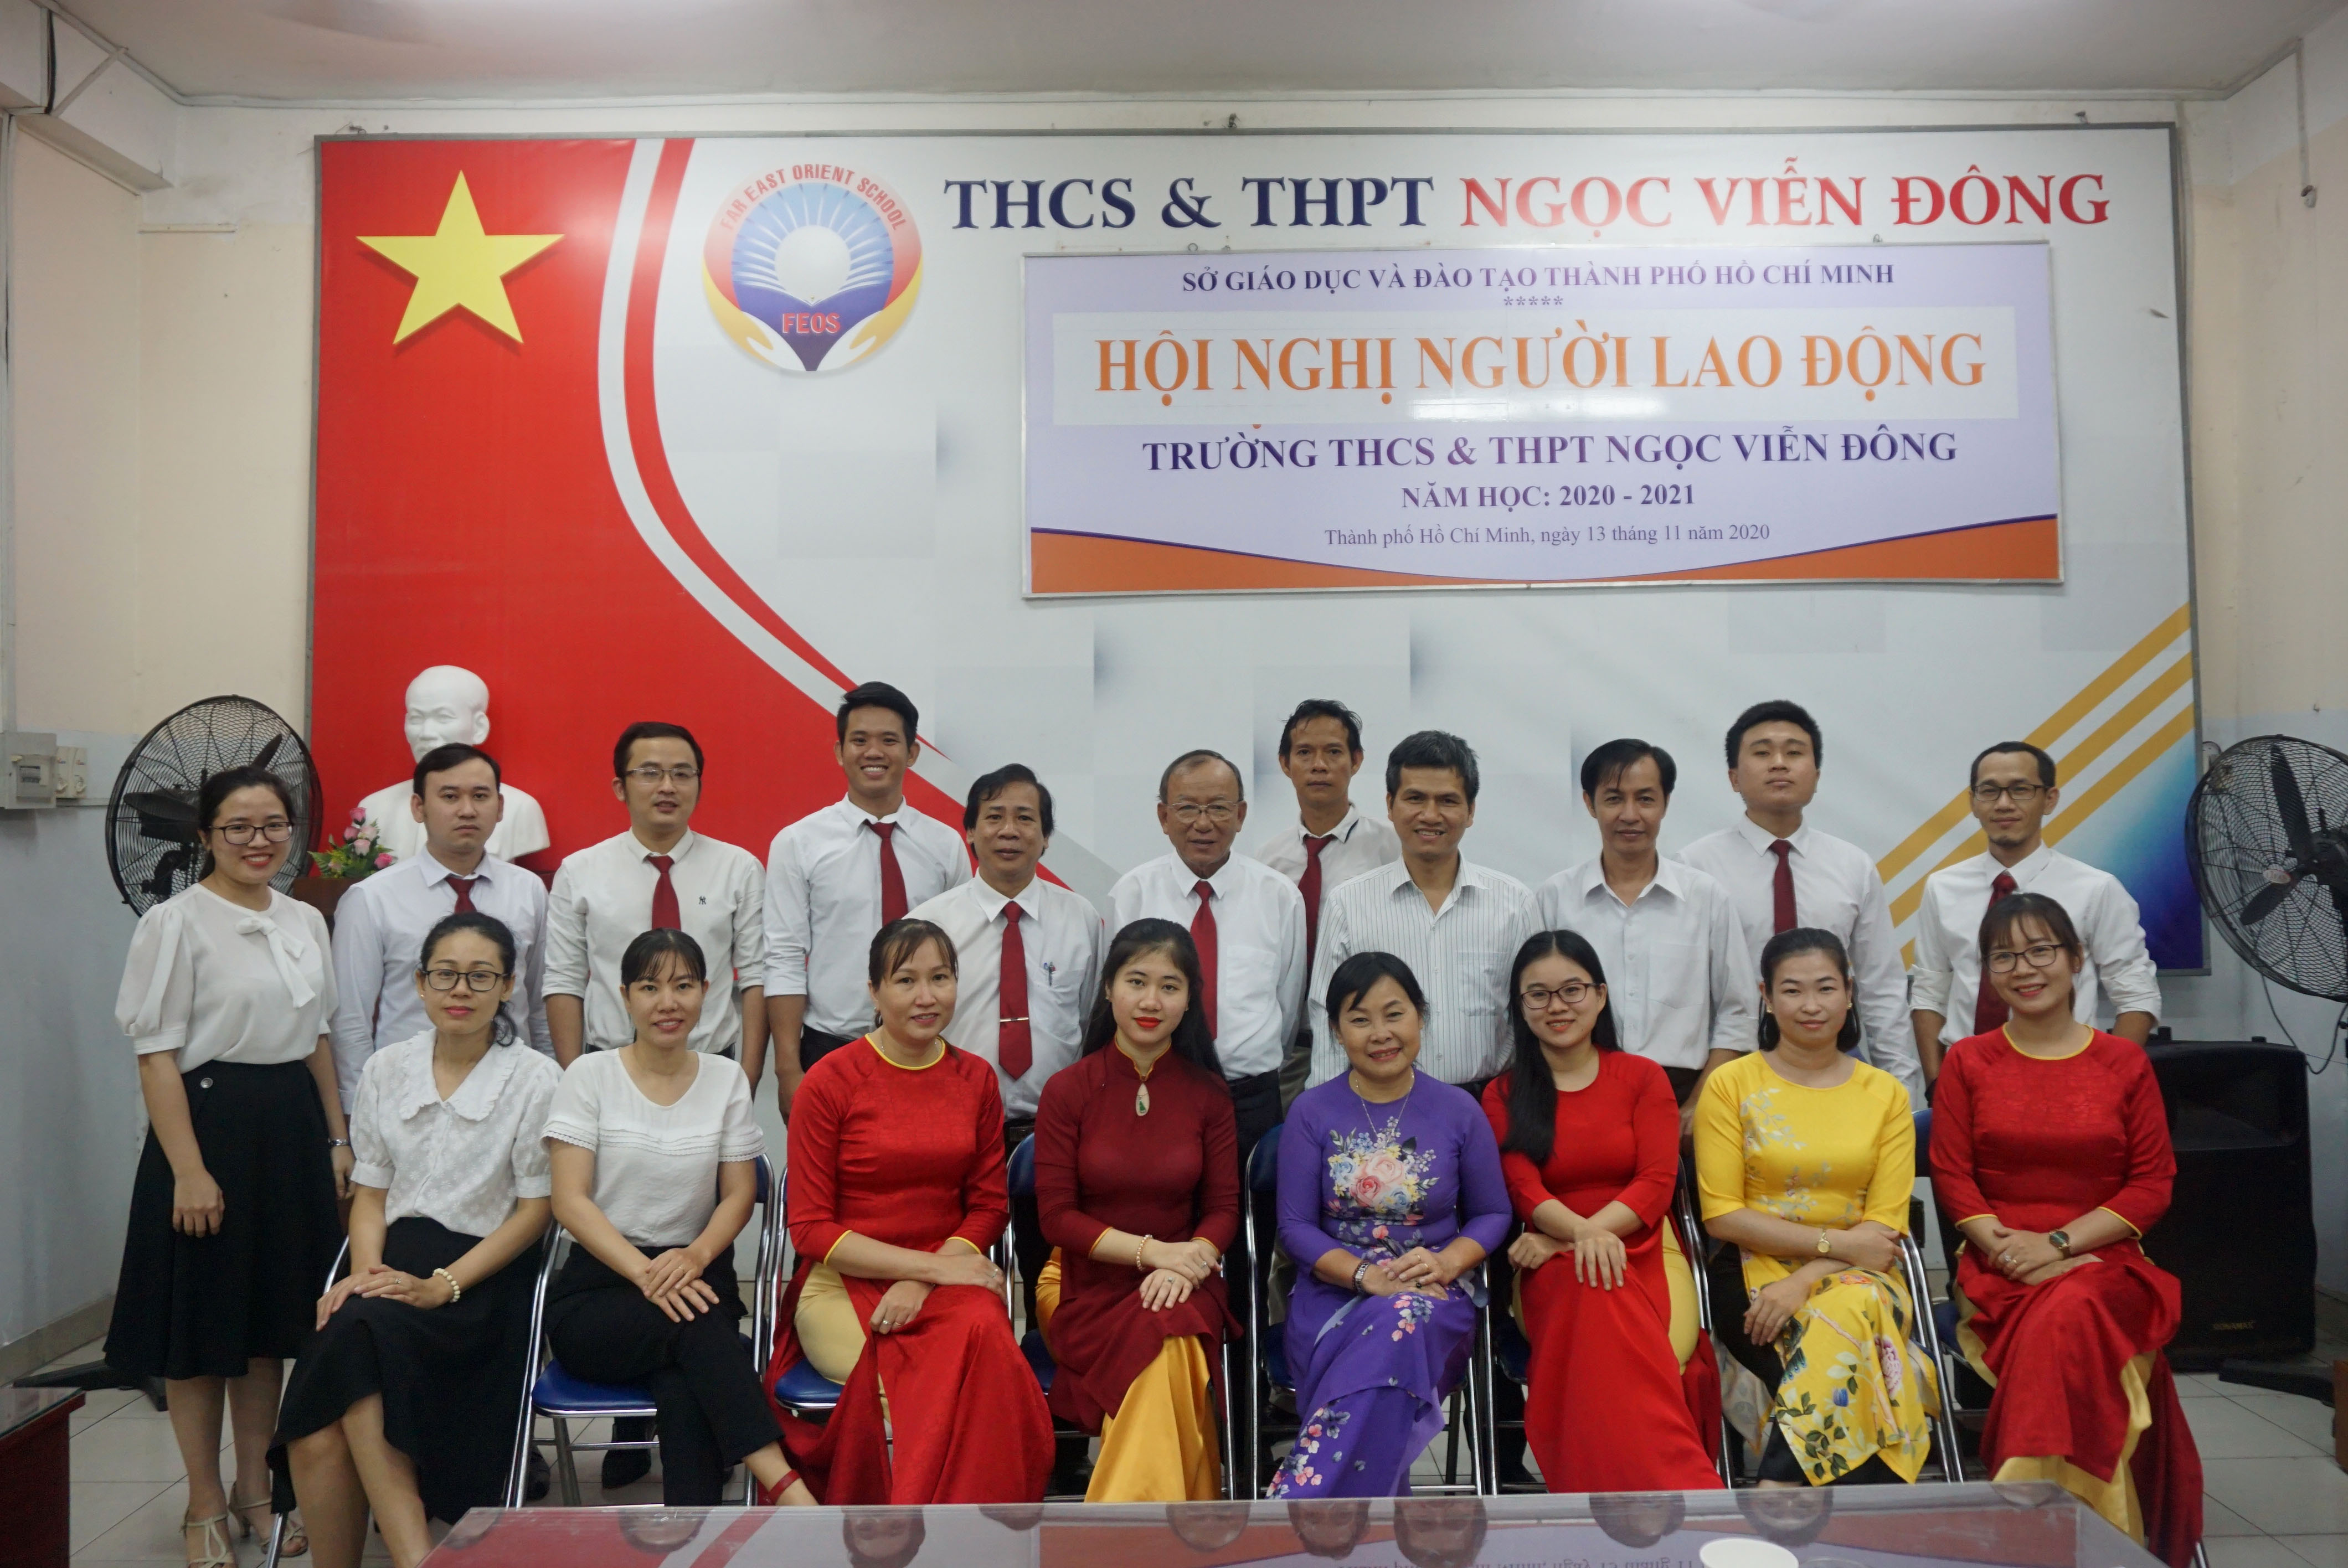 Hội nghị người lao động năm học 2020 - 2021 của trường THCS và THPT Ngọc Viễn Đông